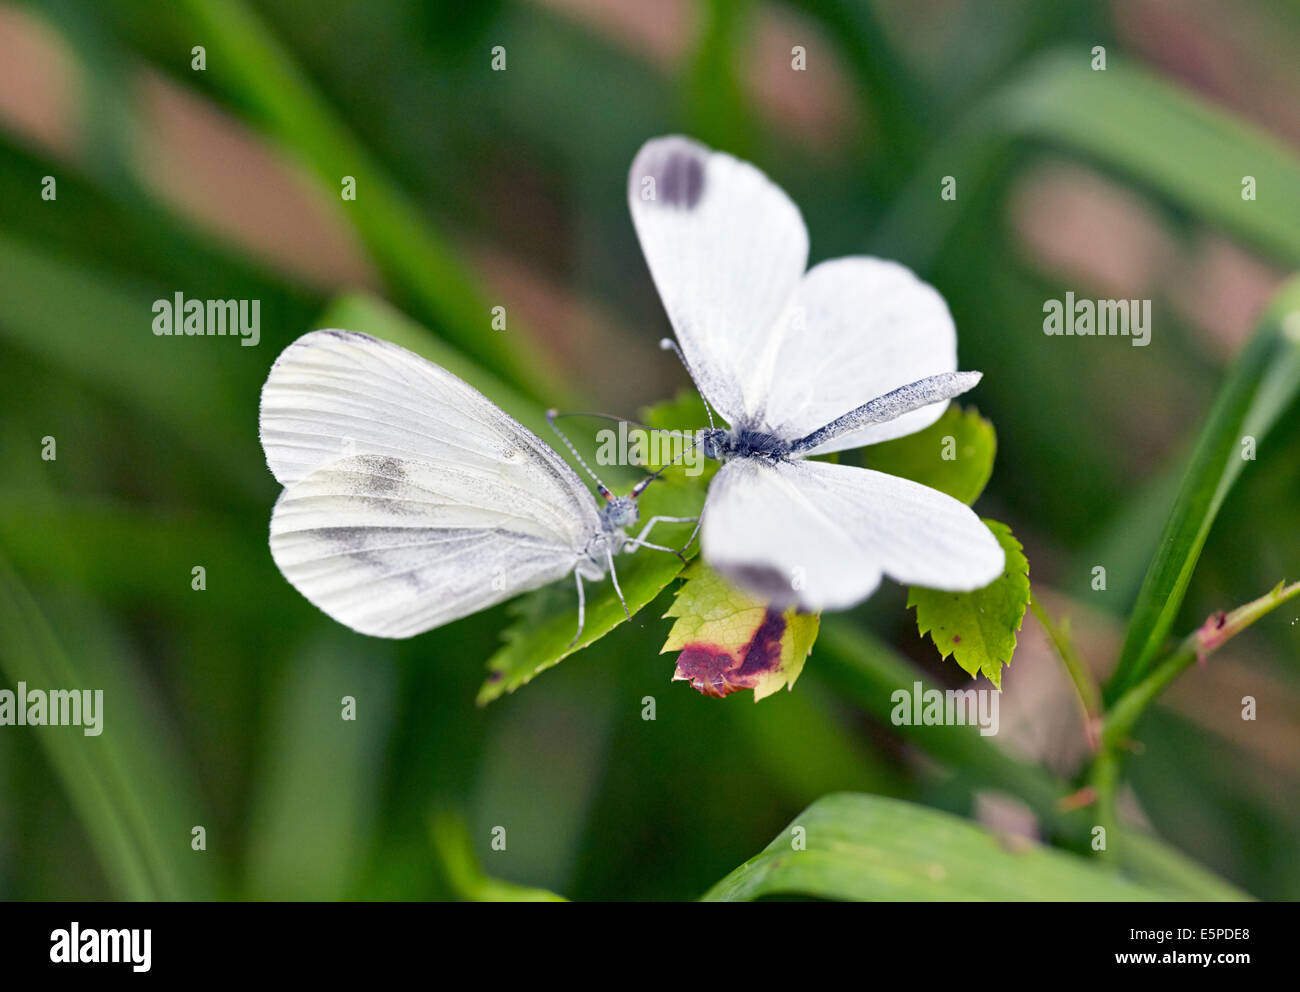 Rituali di corteggiamento di legno bianco farfalle. Legno quercino, Chiddingfold, Surrey, Inghilterra. Foto Stock